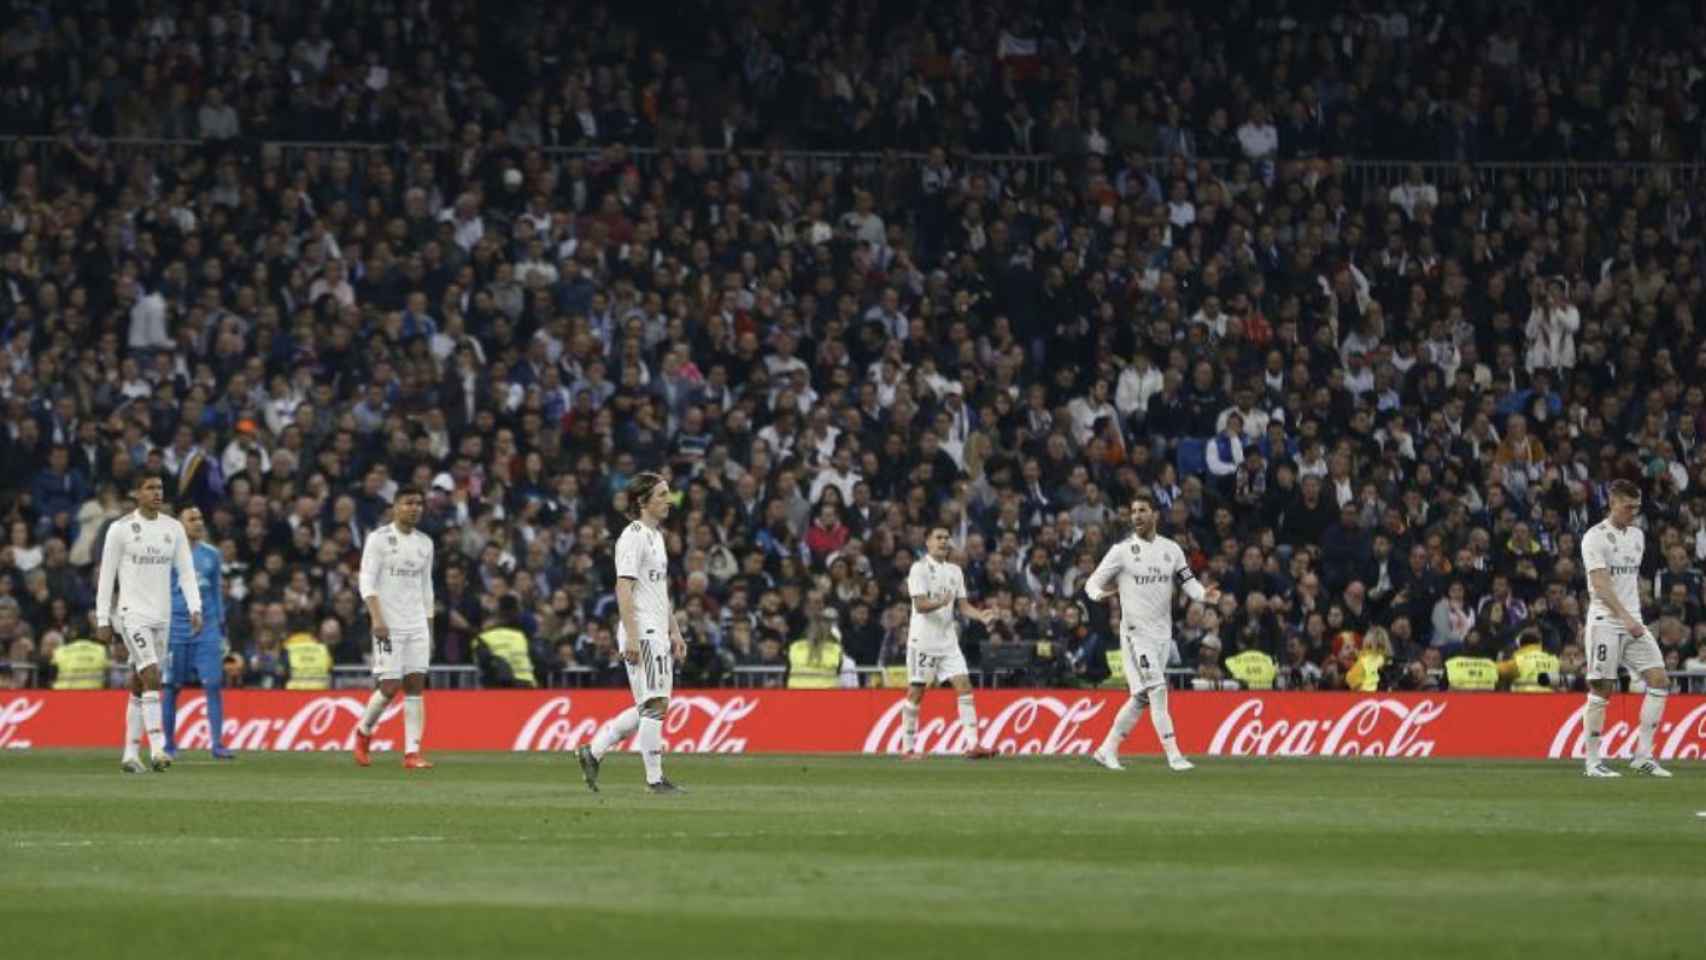 Una foto de los jugadores del Real Madrid durante el clásico copero / Twitter